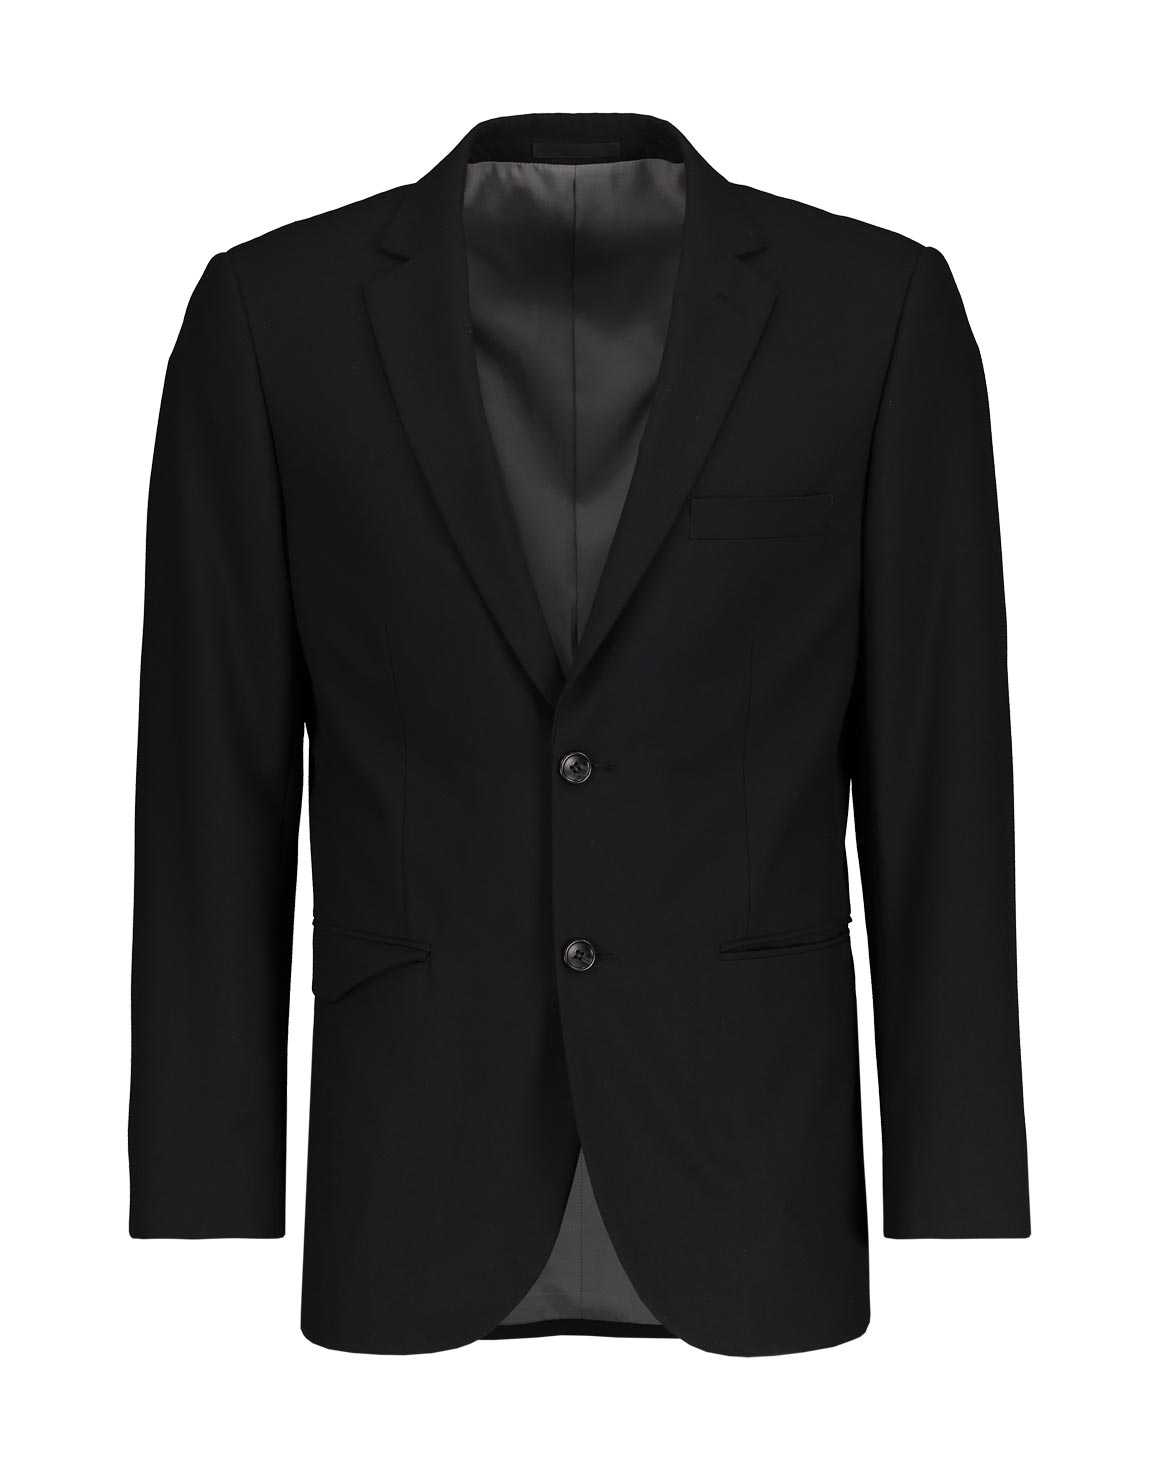 Black Viscose Blend Suit Jacket | Woolworths.co.za